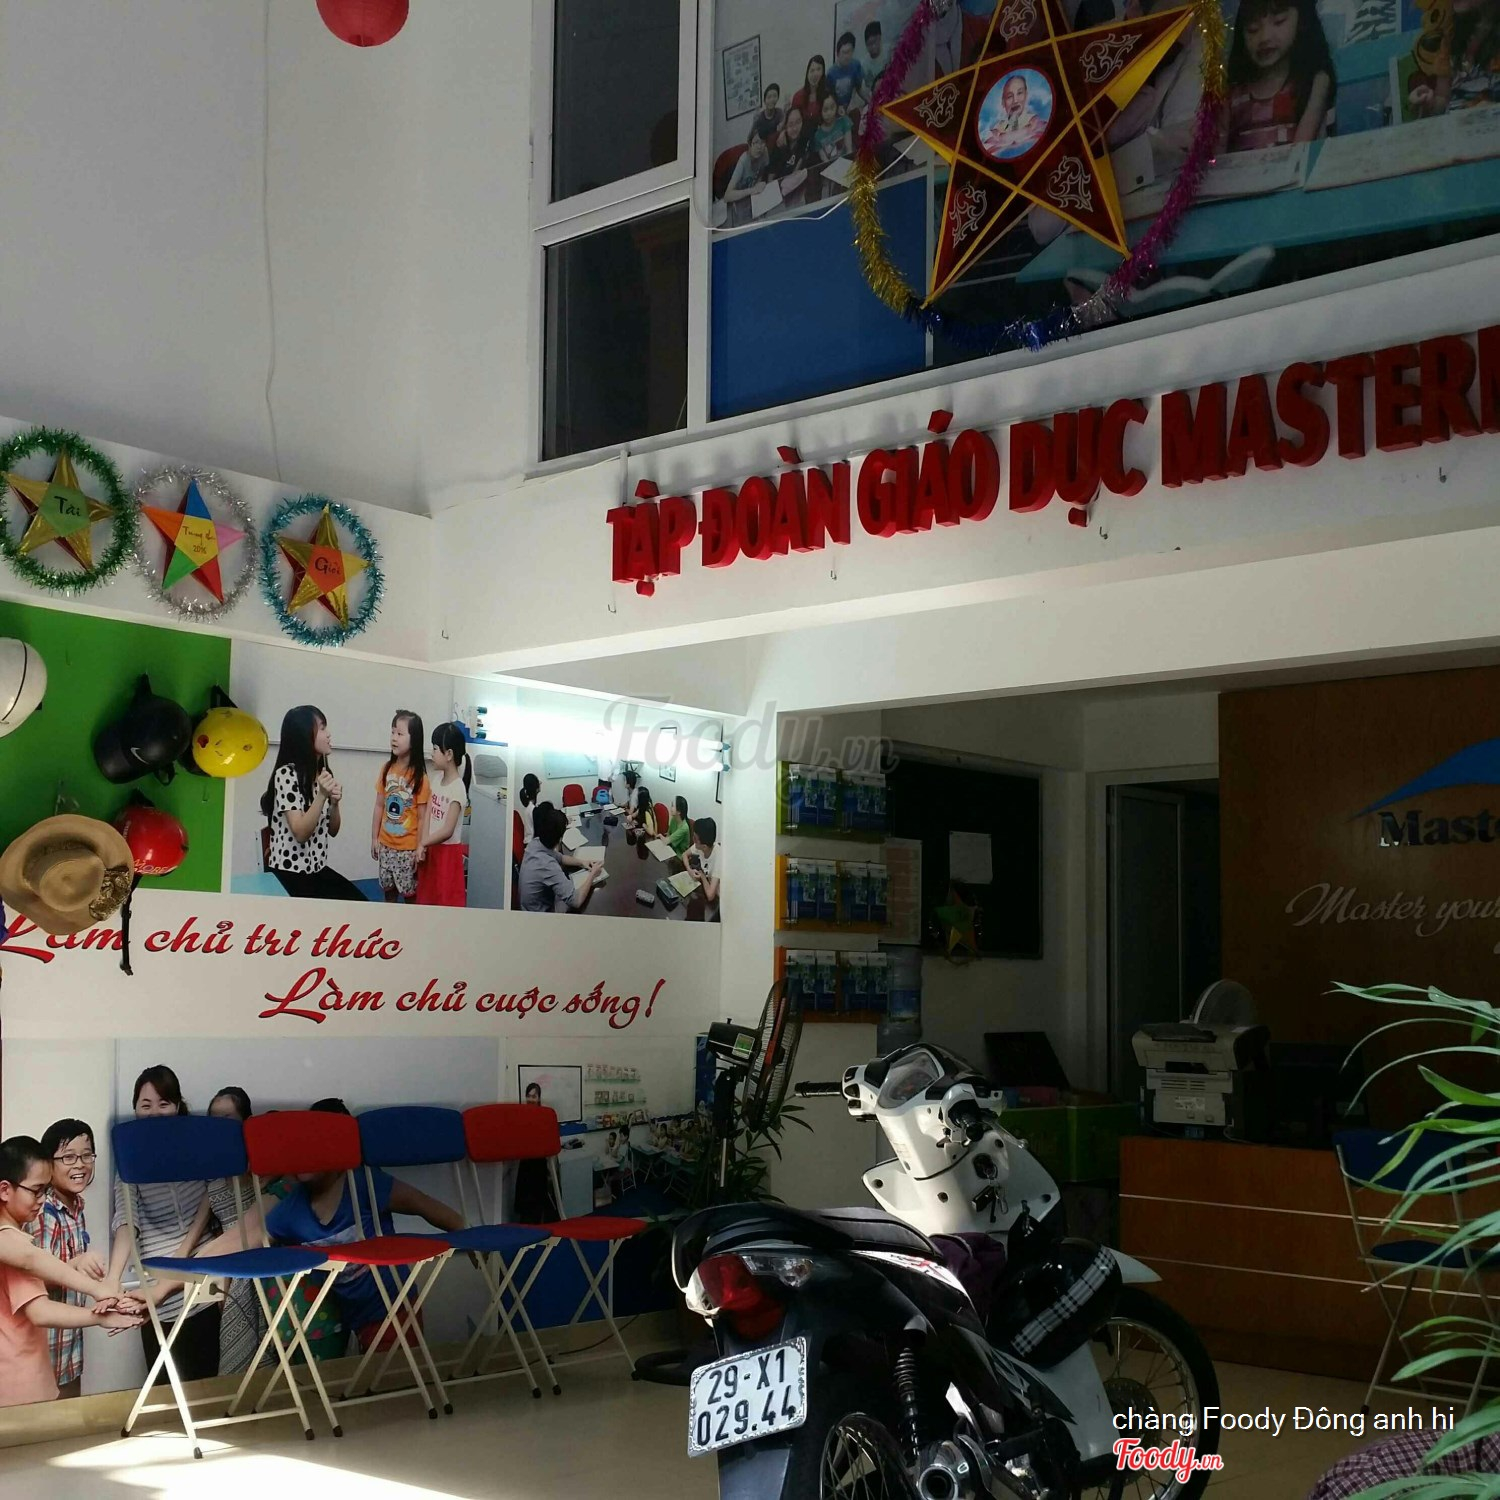 Tiếng Anh Mastermind - Trung Kính Ở Quận Cầu Giấy, Hà Nội | Album Tổng Hợp  | Tiếng Anh Mastermind - Trung Kính | Foody.Vn